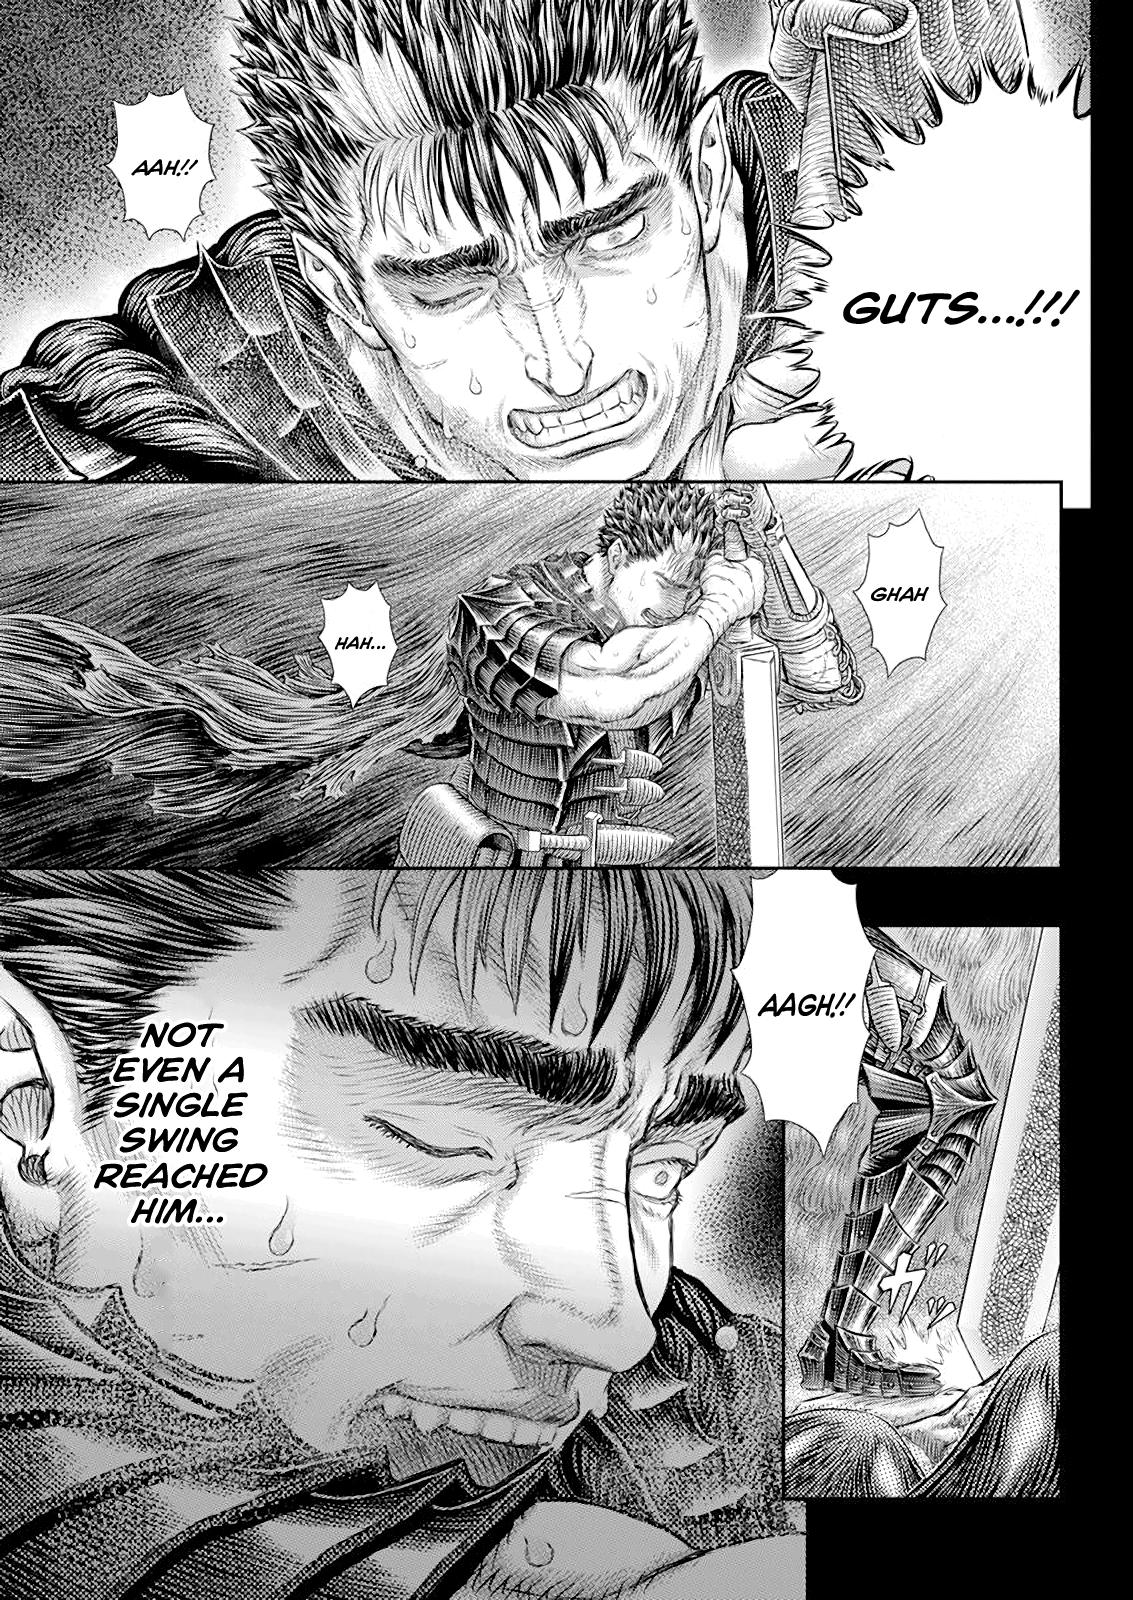 Berserk Manga Chapter 369 image 03